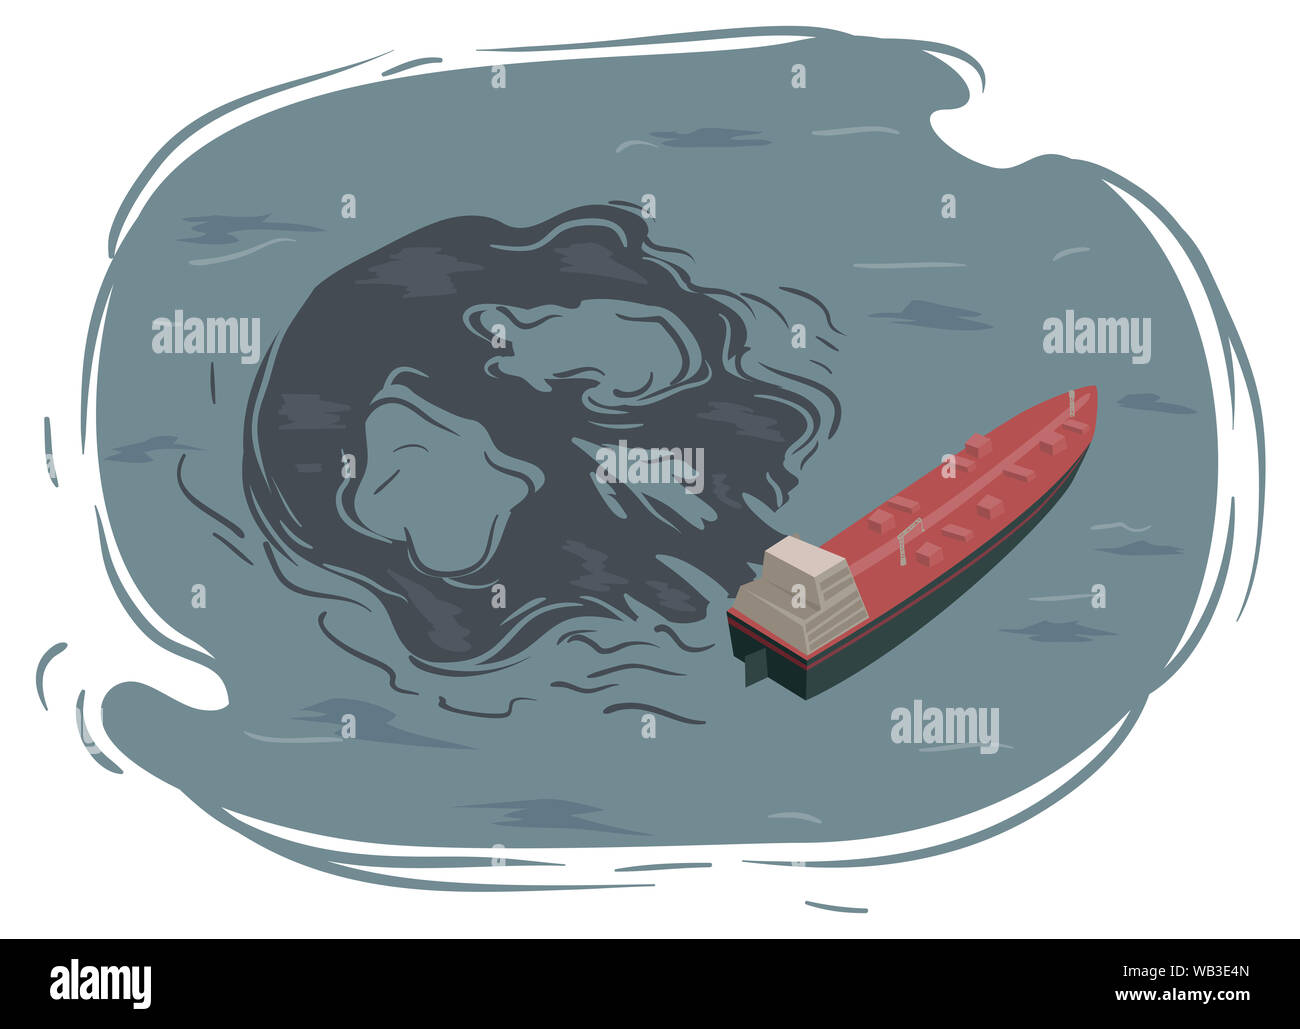 Abbildung: ein Öltankschiff, das Schiff mit Ölkatastrophe geformt wie Schädel Stockfoto